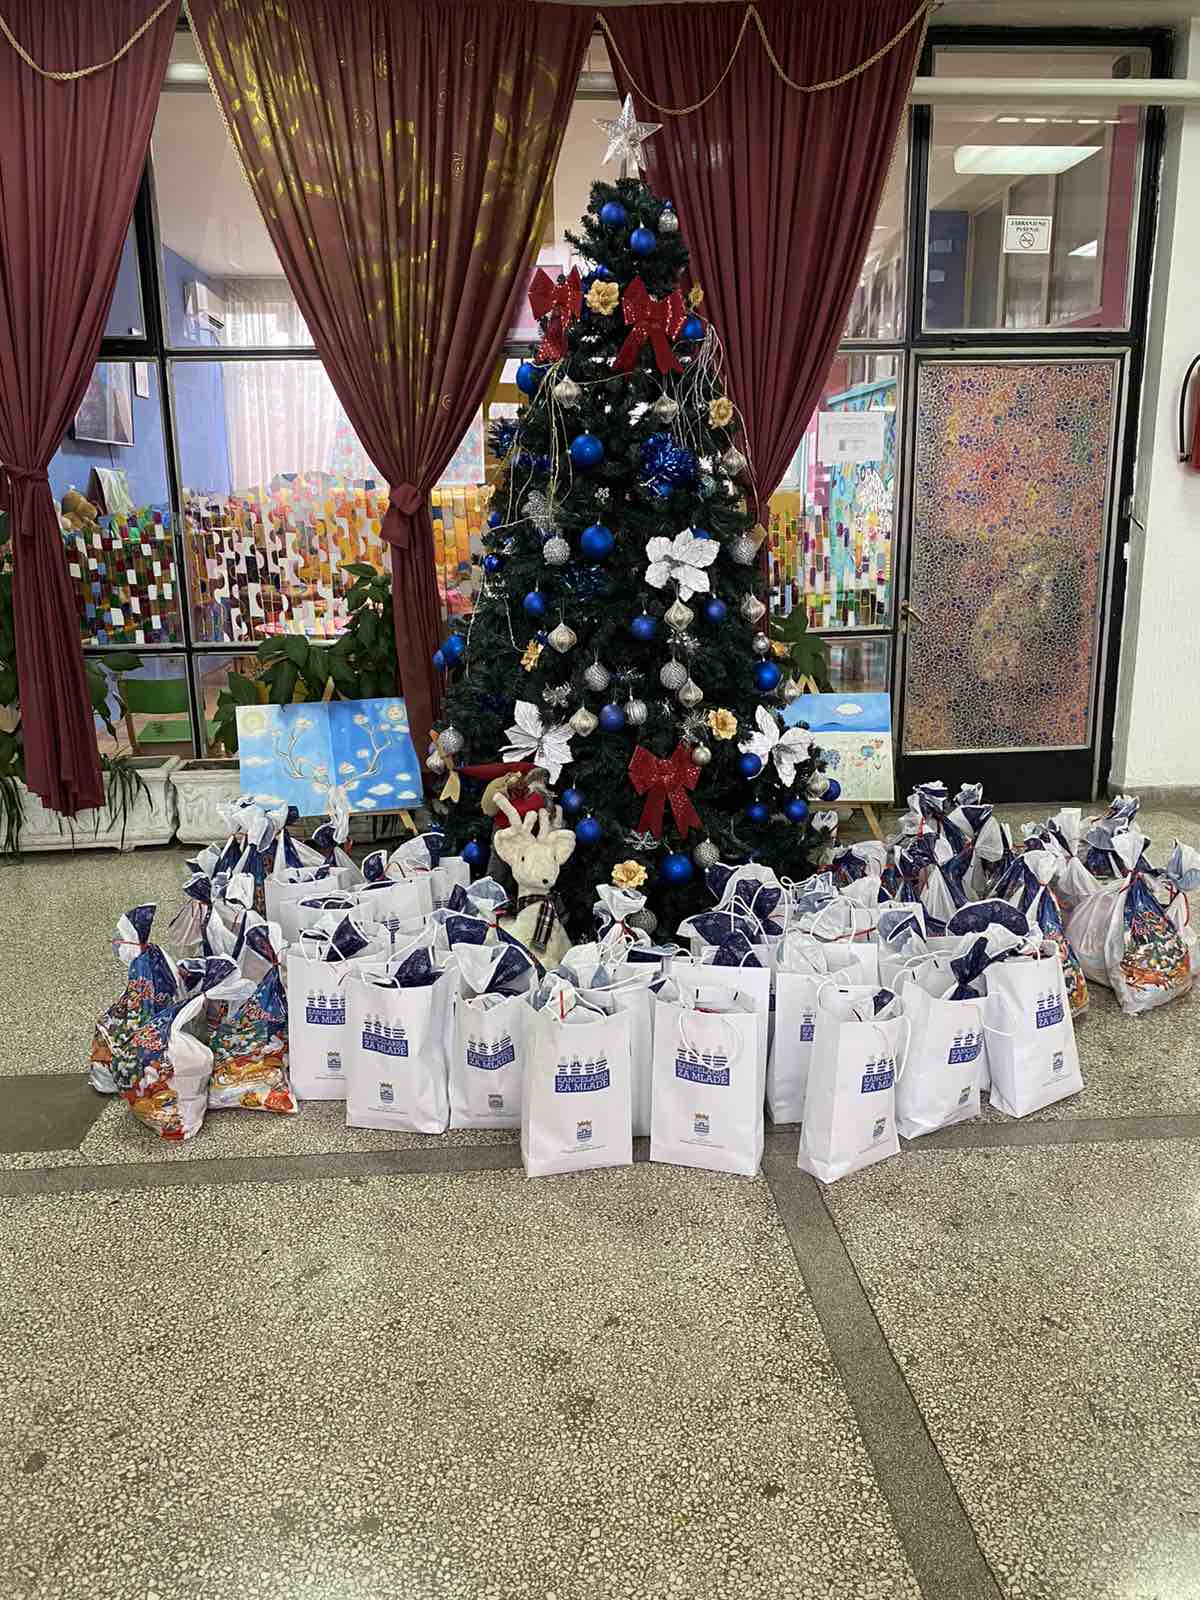 Kancelarija za mlade Glavnog grada uručila novogodišnje poklone za Dnevni centar na Starom aerodromu i prvake OŠ "Marko Miljanov"